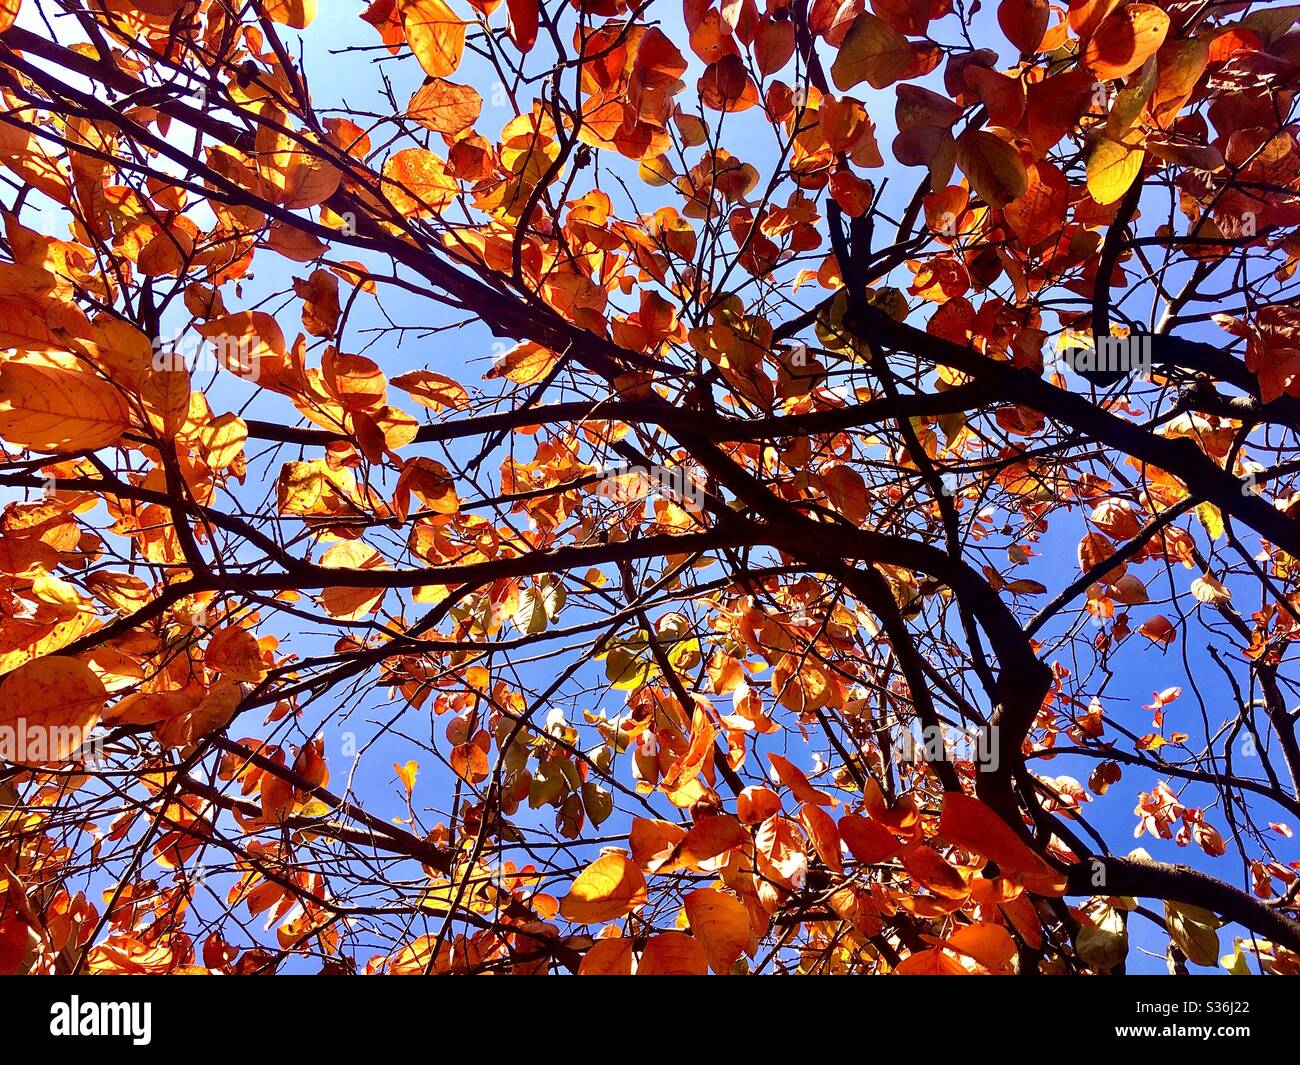 Algunos árboles pierden sus hojas cuando la estación seca es commuda como frutos de caqui. El color de esta imagen tiene sentido porque la combinación de color azul y naranja está bien emparejada. Foto de stock